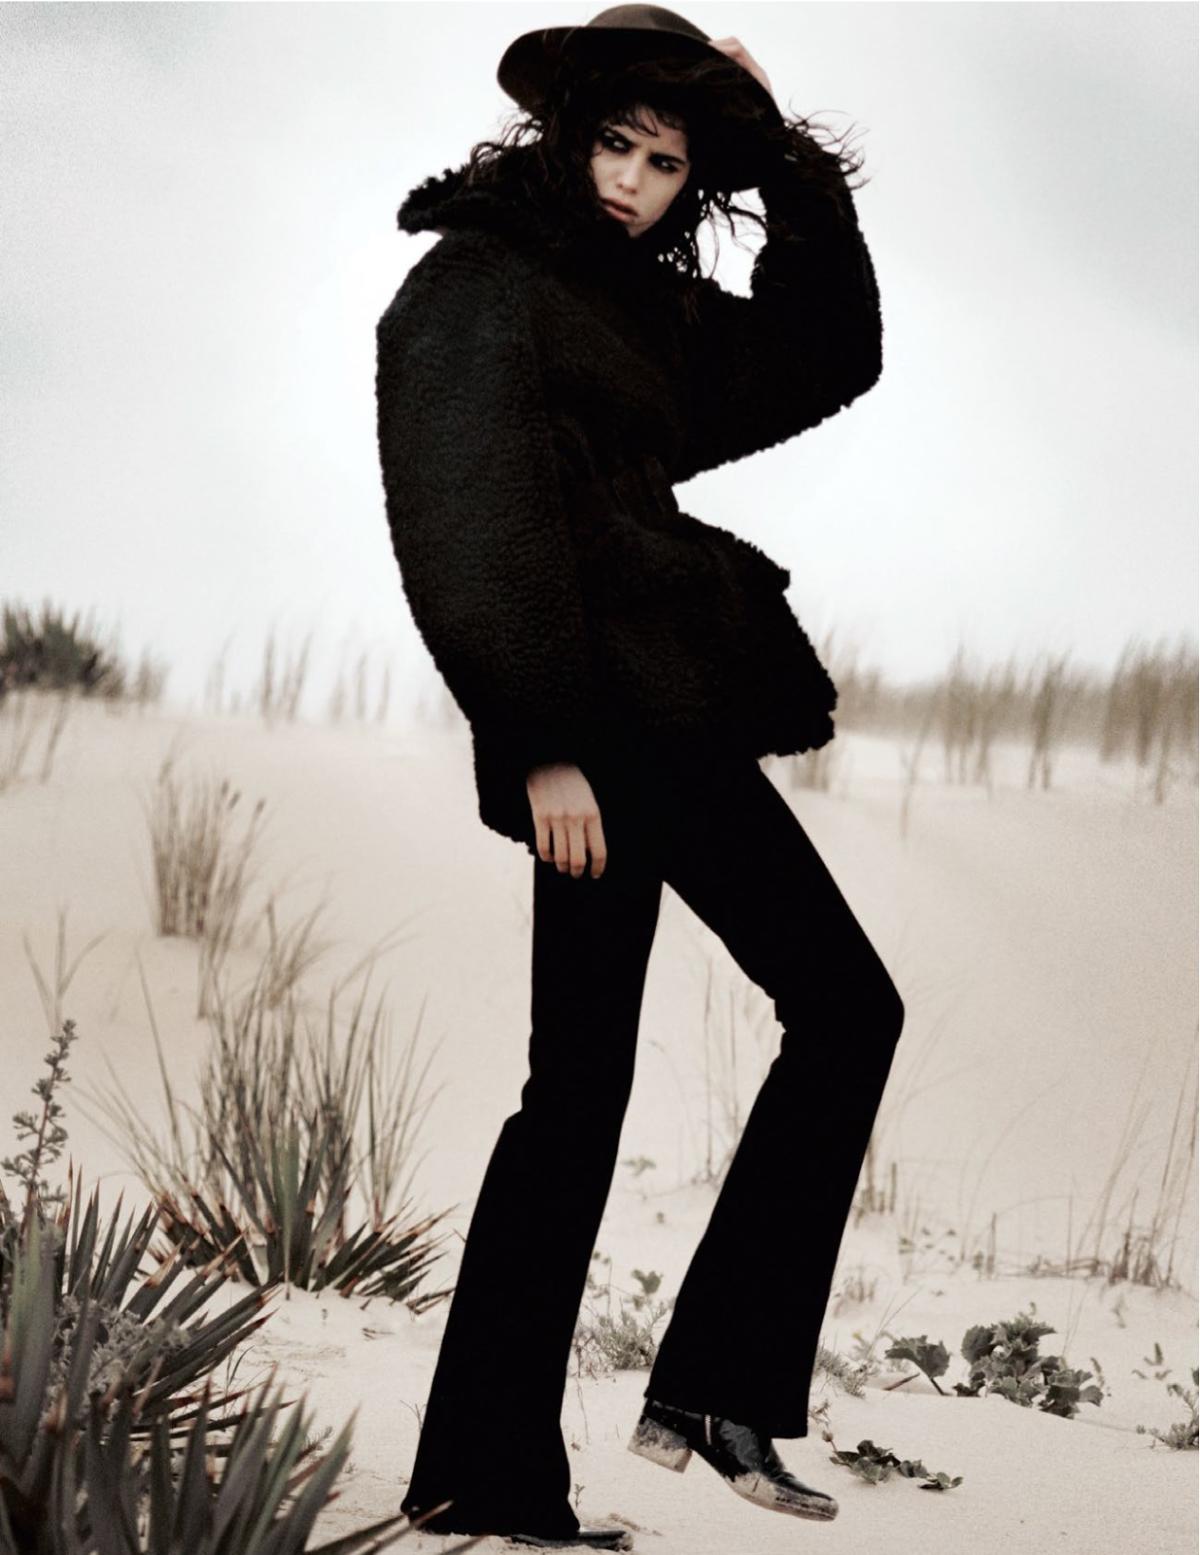 Frenchy Mica Arganaraz by David Sims for Vogue Paris September 2014